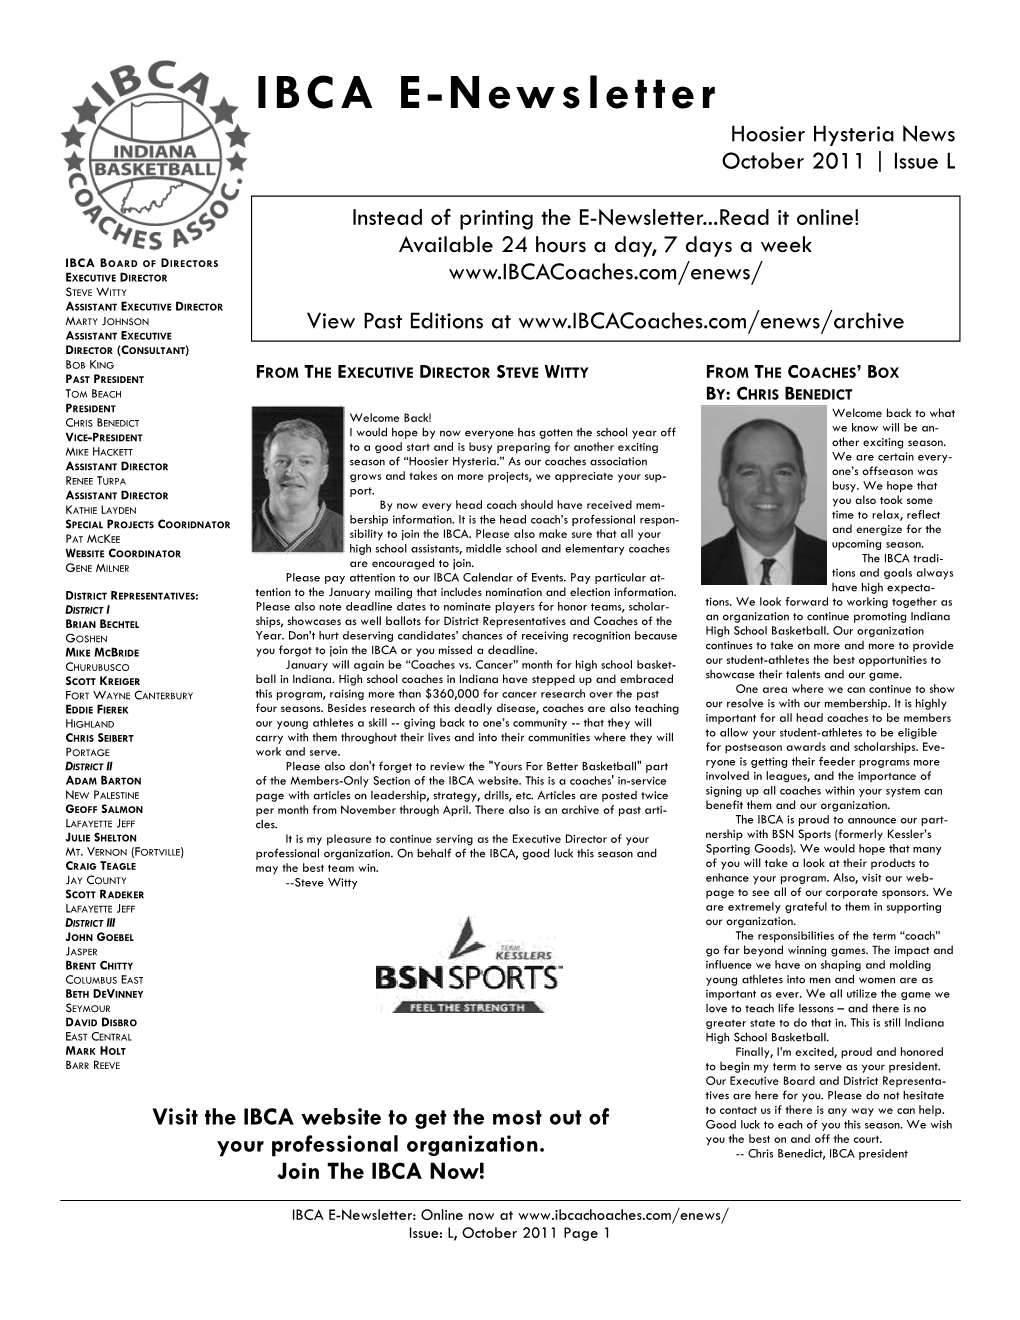 IBCA E-Newsletter Hoosier Hysteria News October 2011 | Issue L